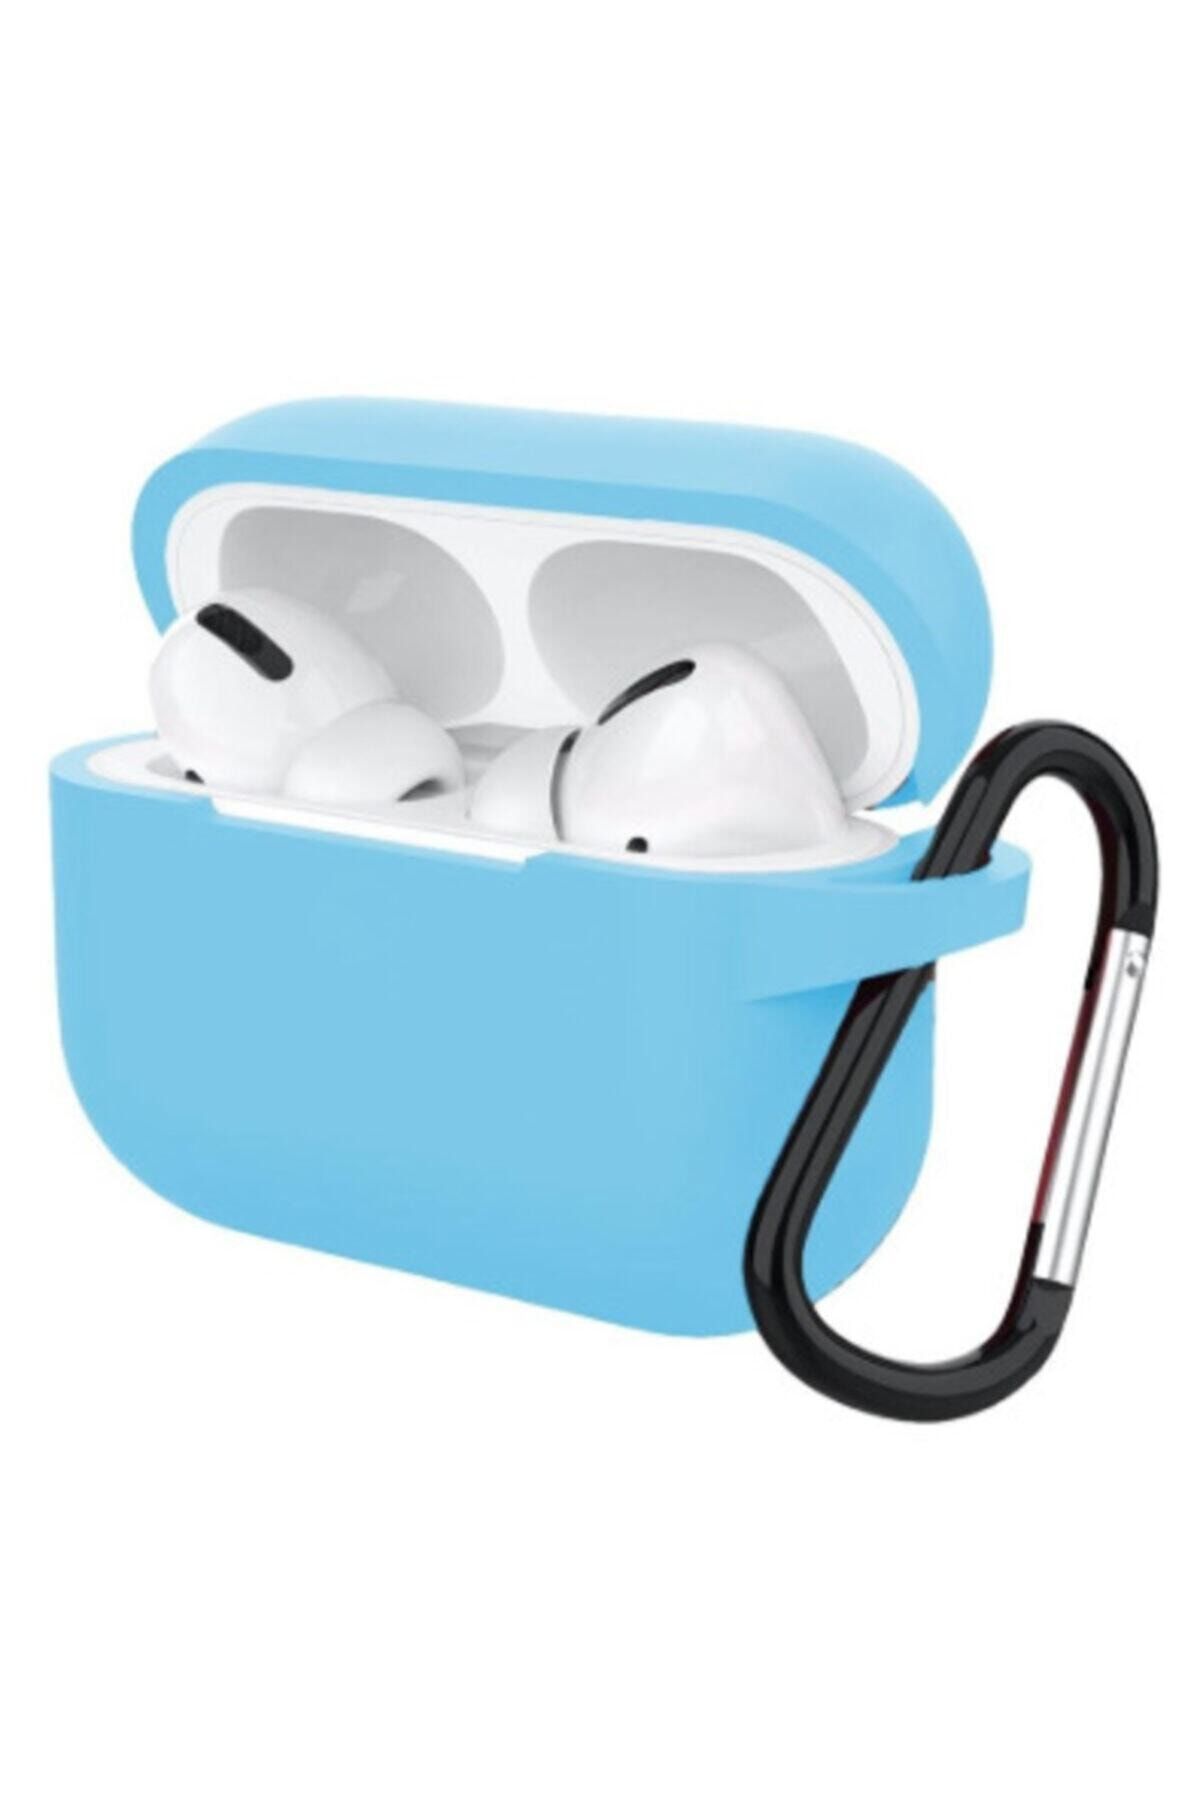 Protonust Apple Uyumlu Airpods Pro Taşıma Kopçalı Mavi Koruyucu Silikon Kılıf